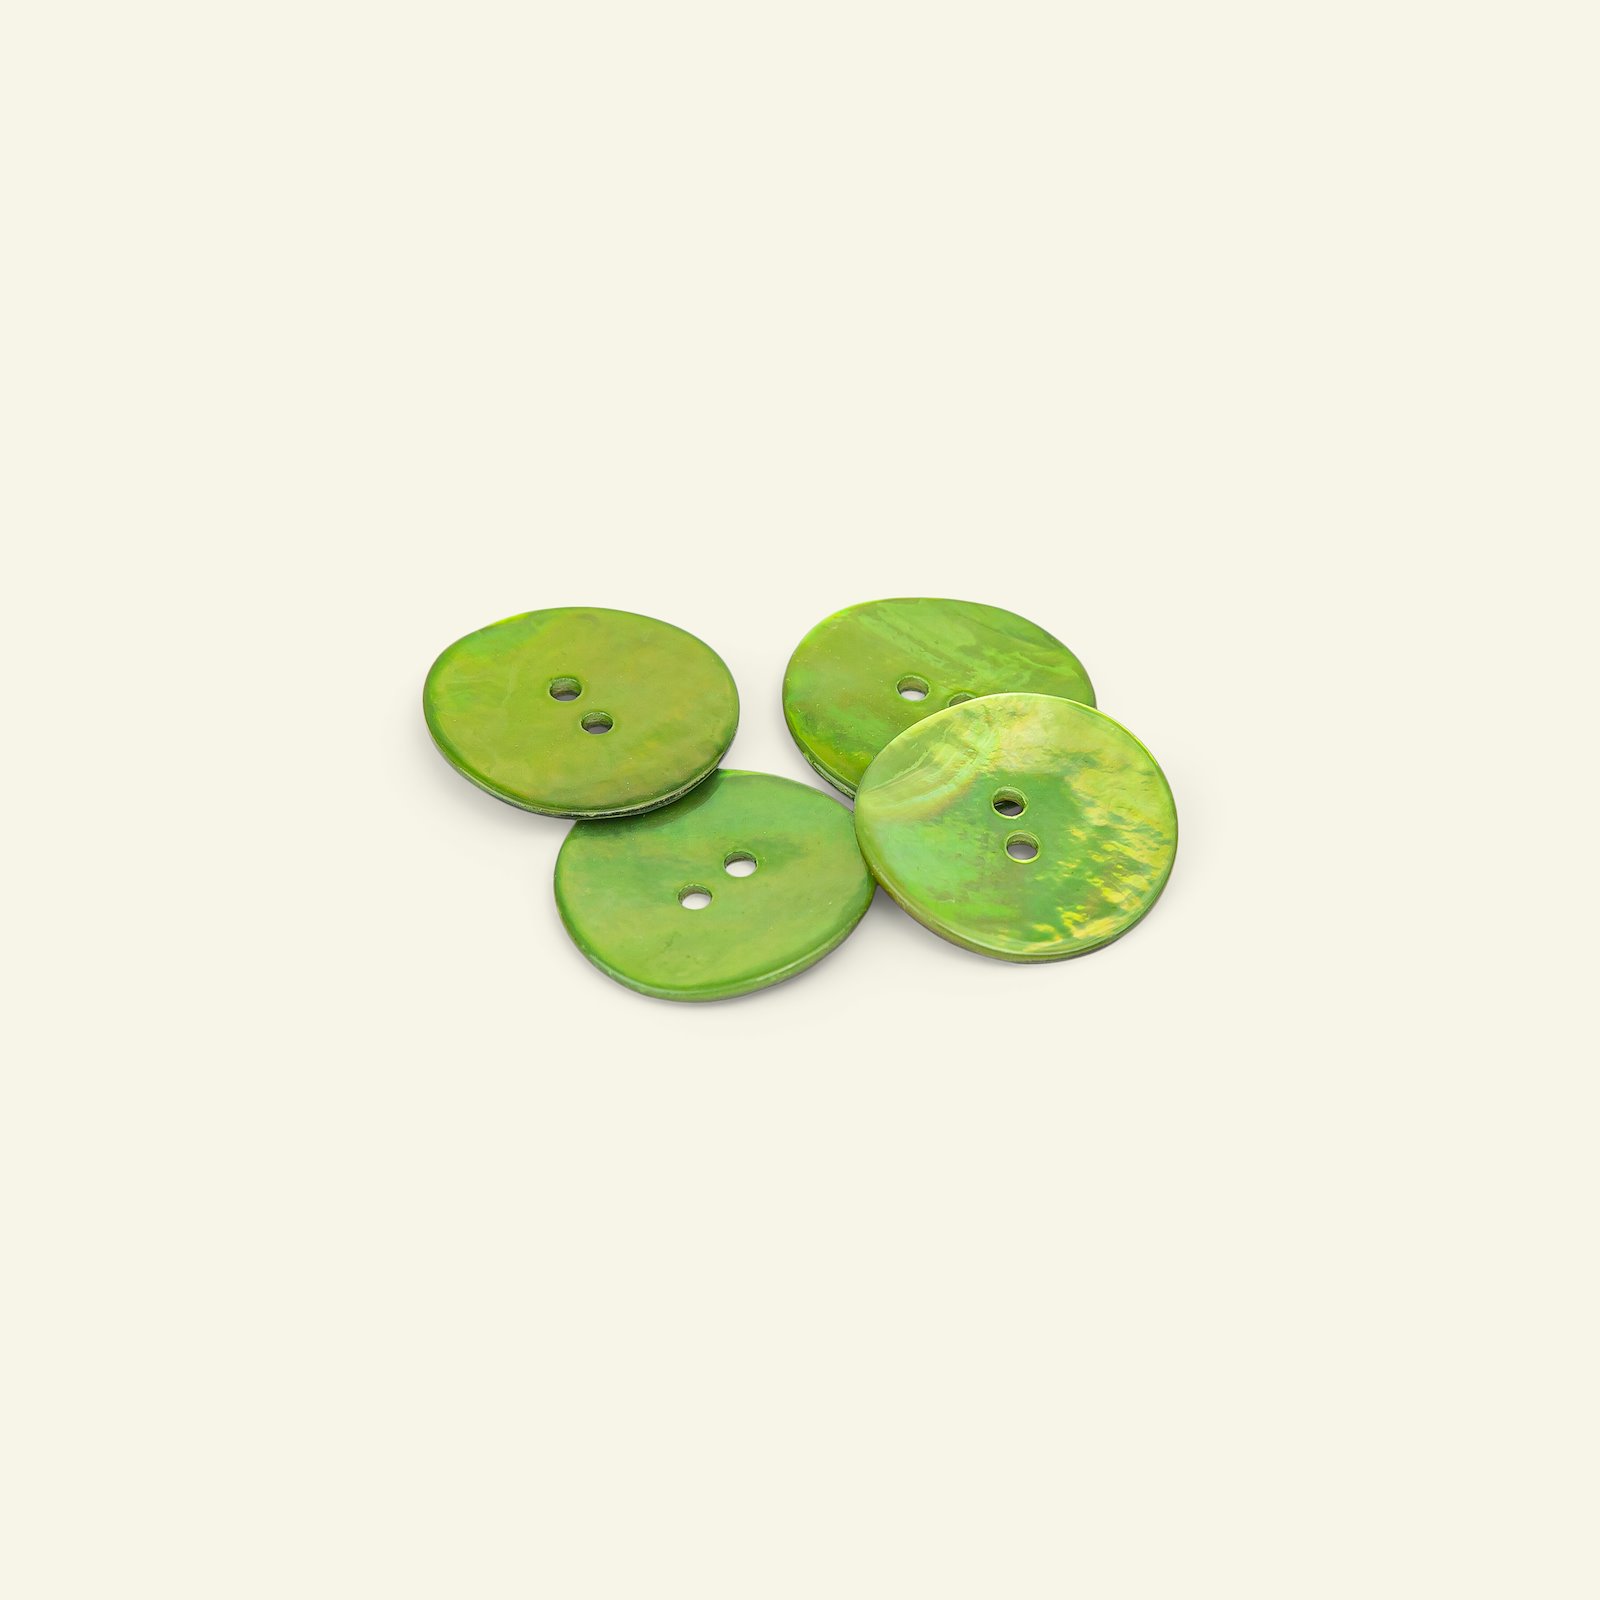 Knap 2-huls perlemor 23mm lime grøn 4stk 33252_pack